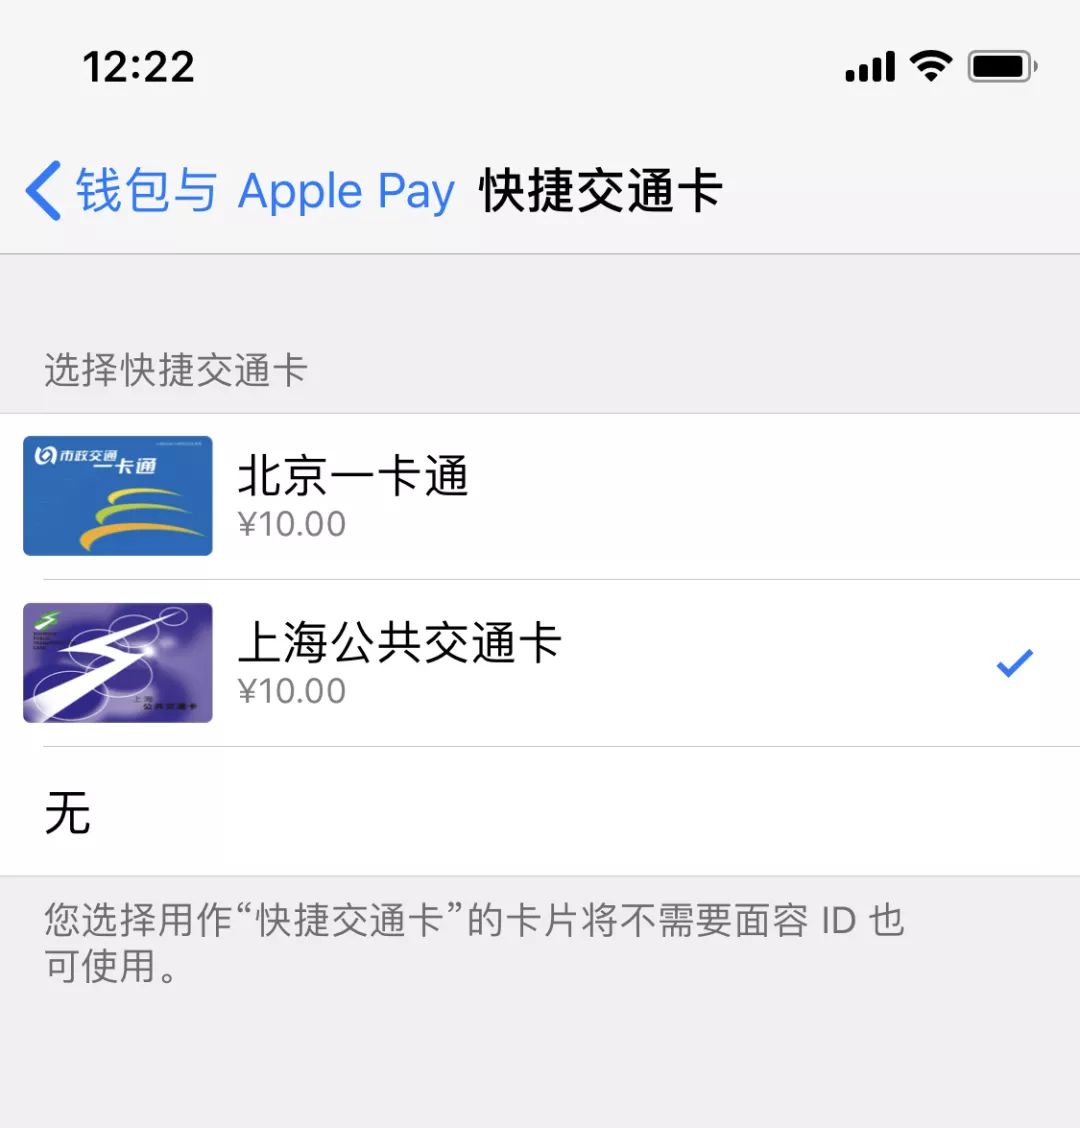 提前在上海试了下 Apple Pay 交通卡 有点羡慕